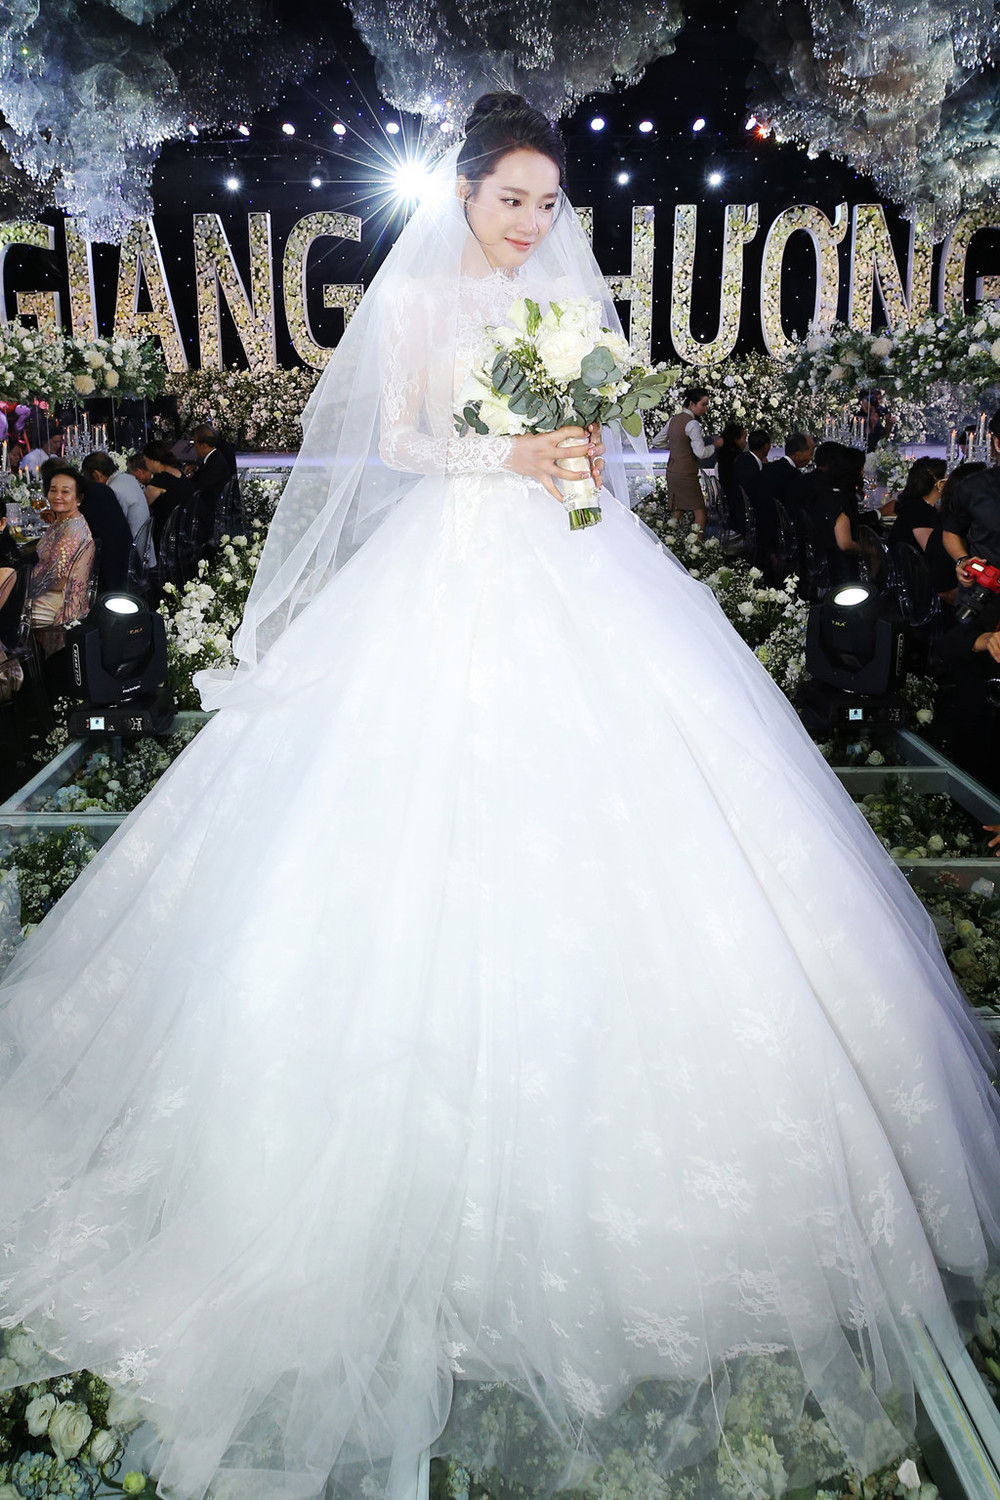 Không chỉ Đông Nhi, nhiều sao Việt cũng chọn váy cưới kiểu công chúa